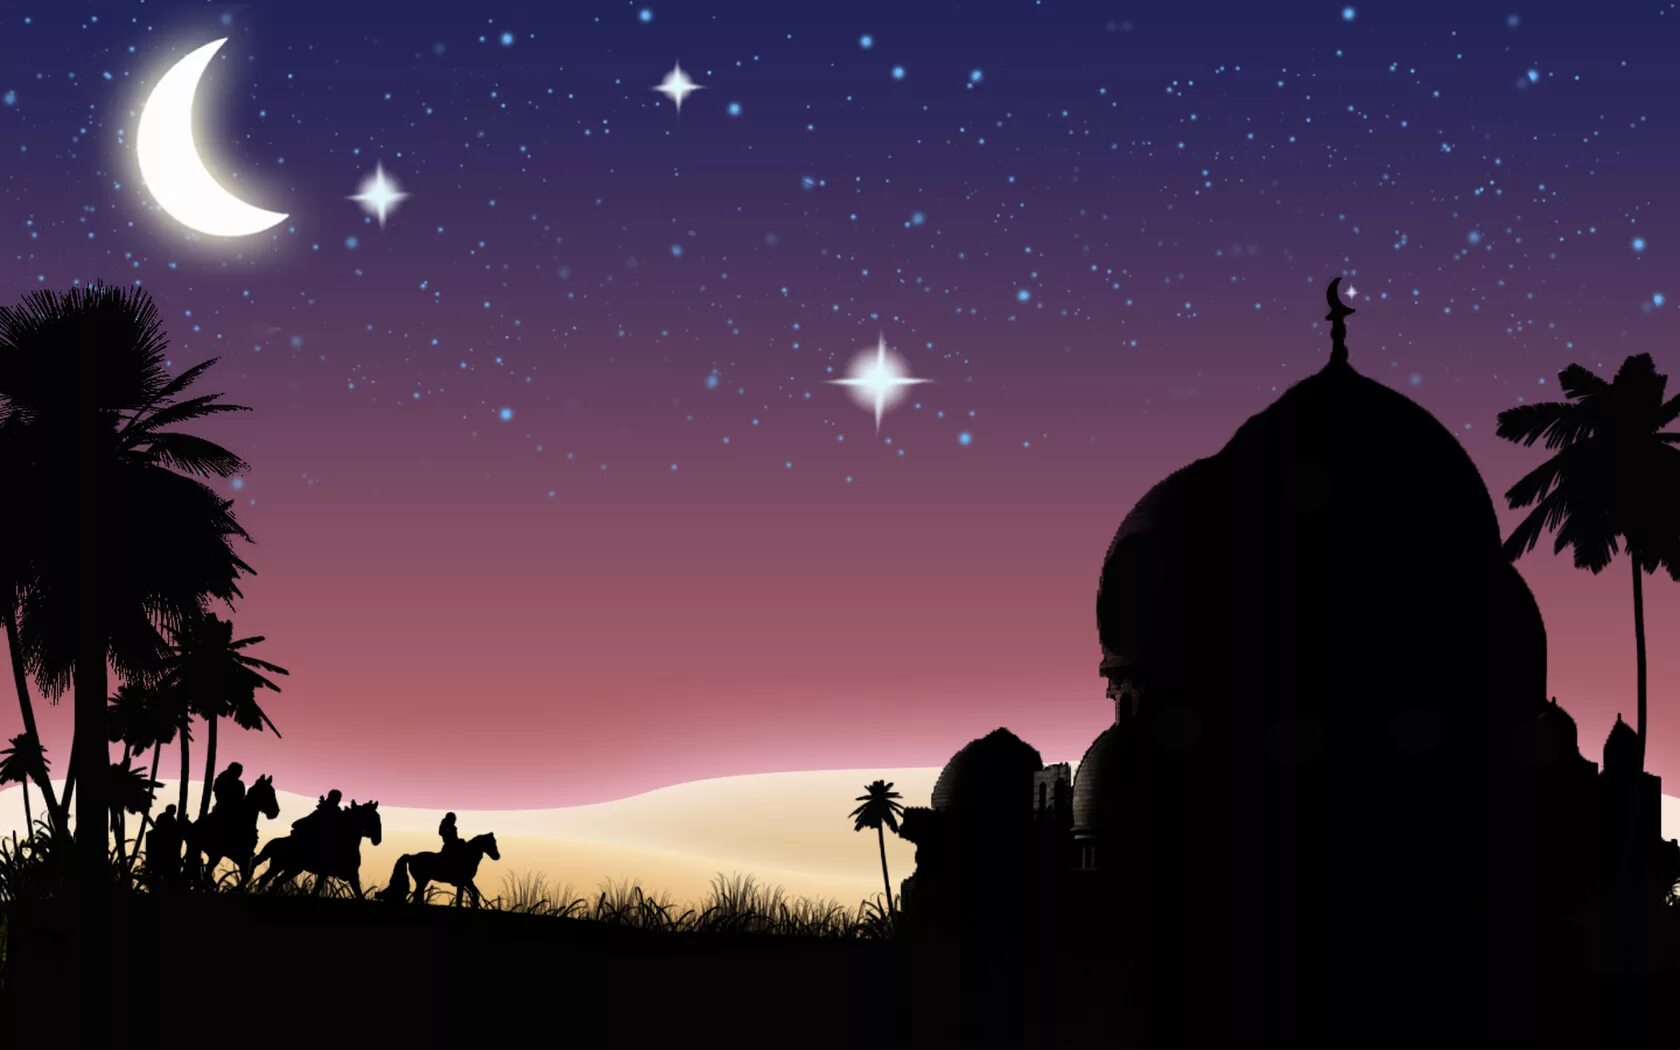 Мусульманское небо. Восточная тематика. Восточный пейзаж. Арабская ночь. Восточная ночь.